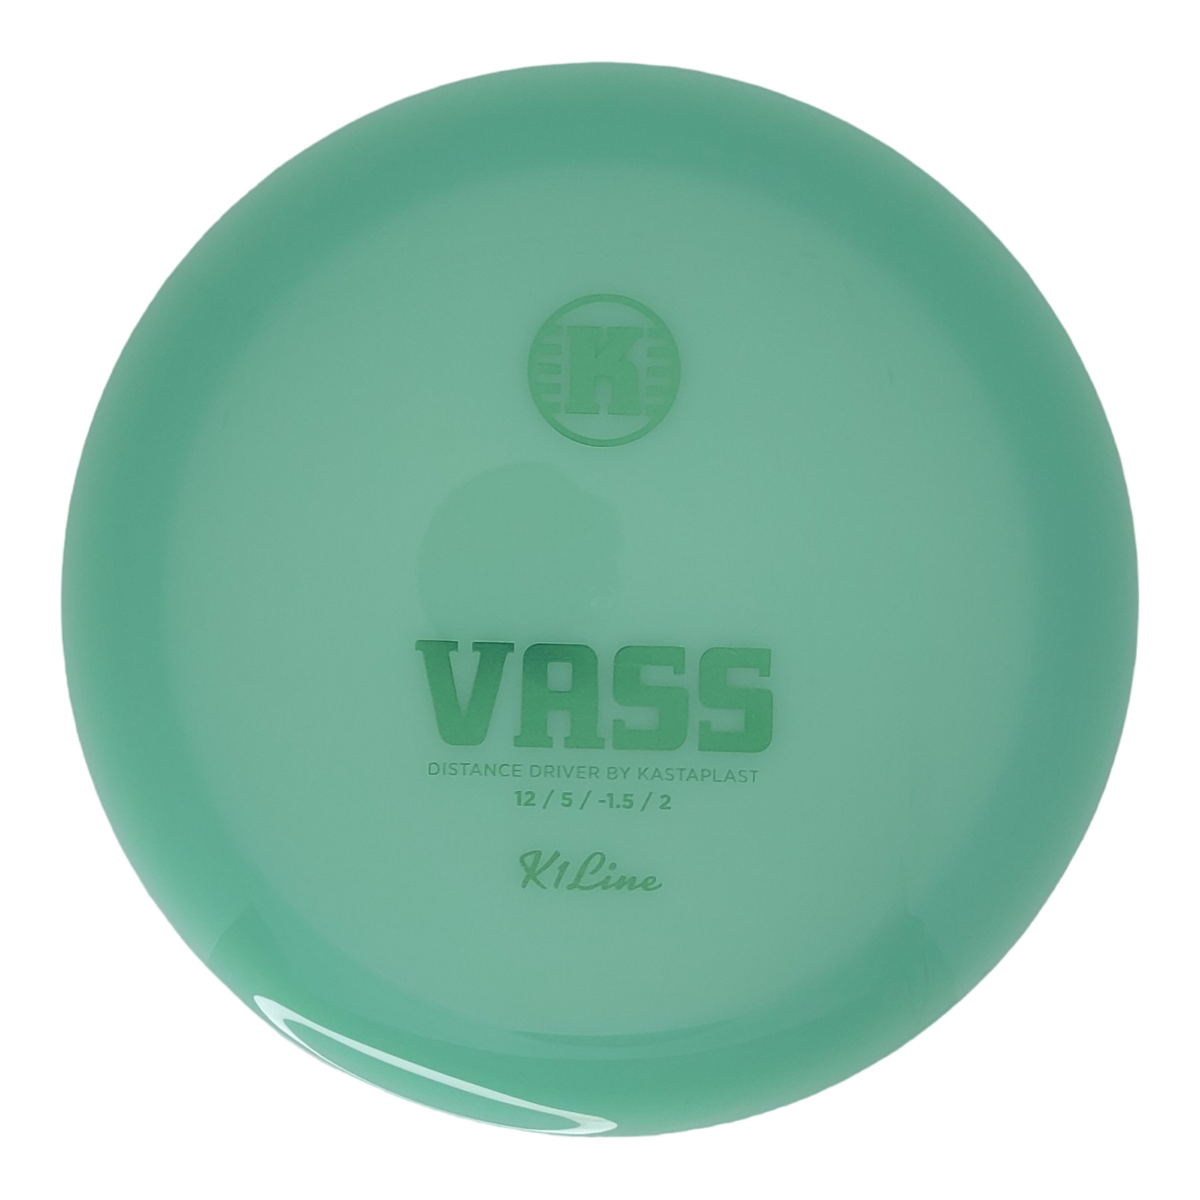 Kastaplast K1 Vass - First Run